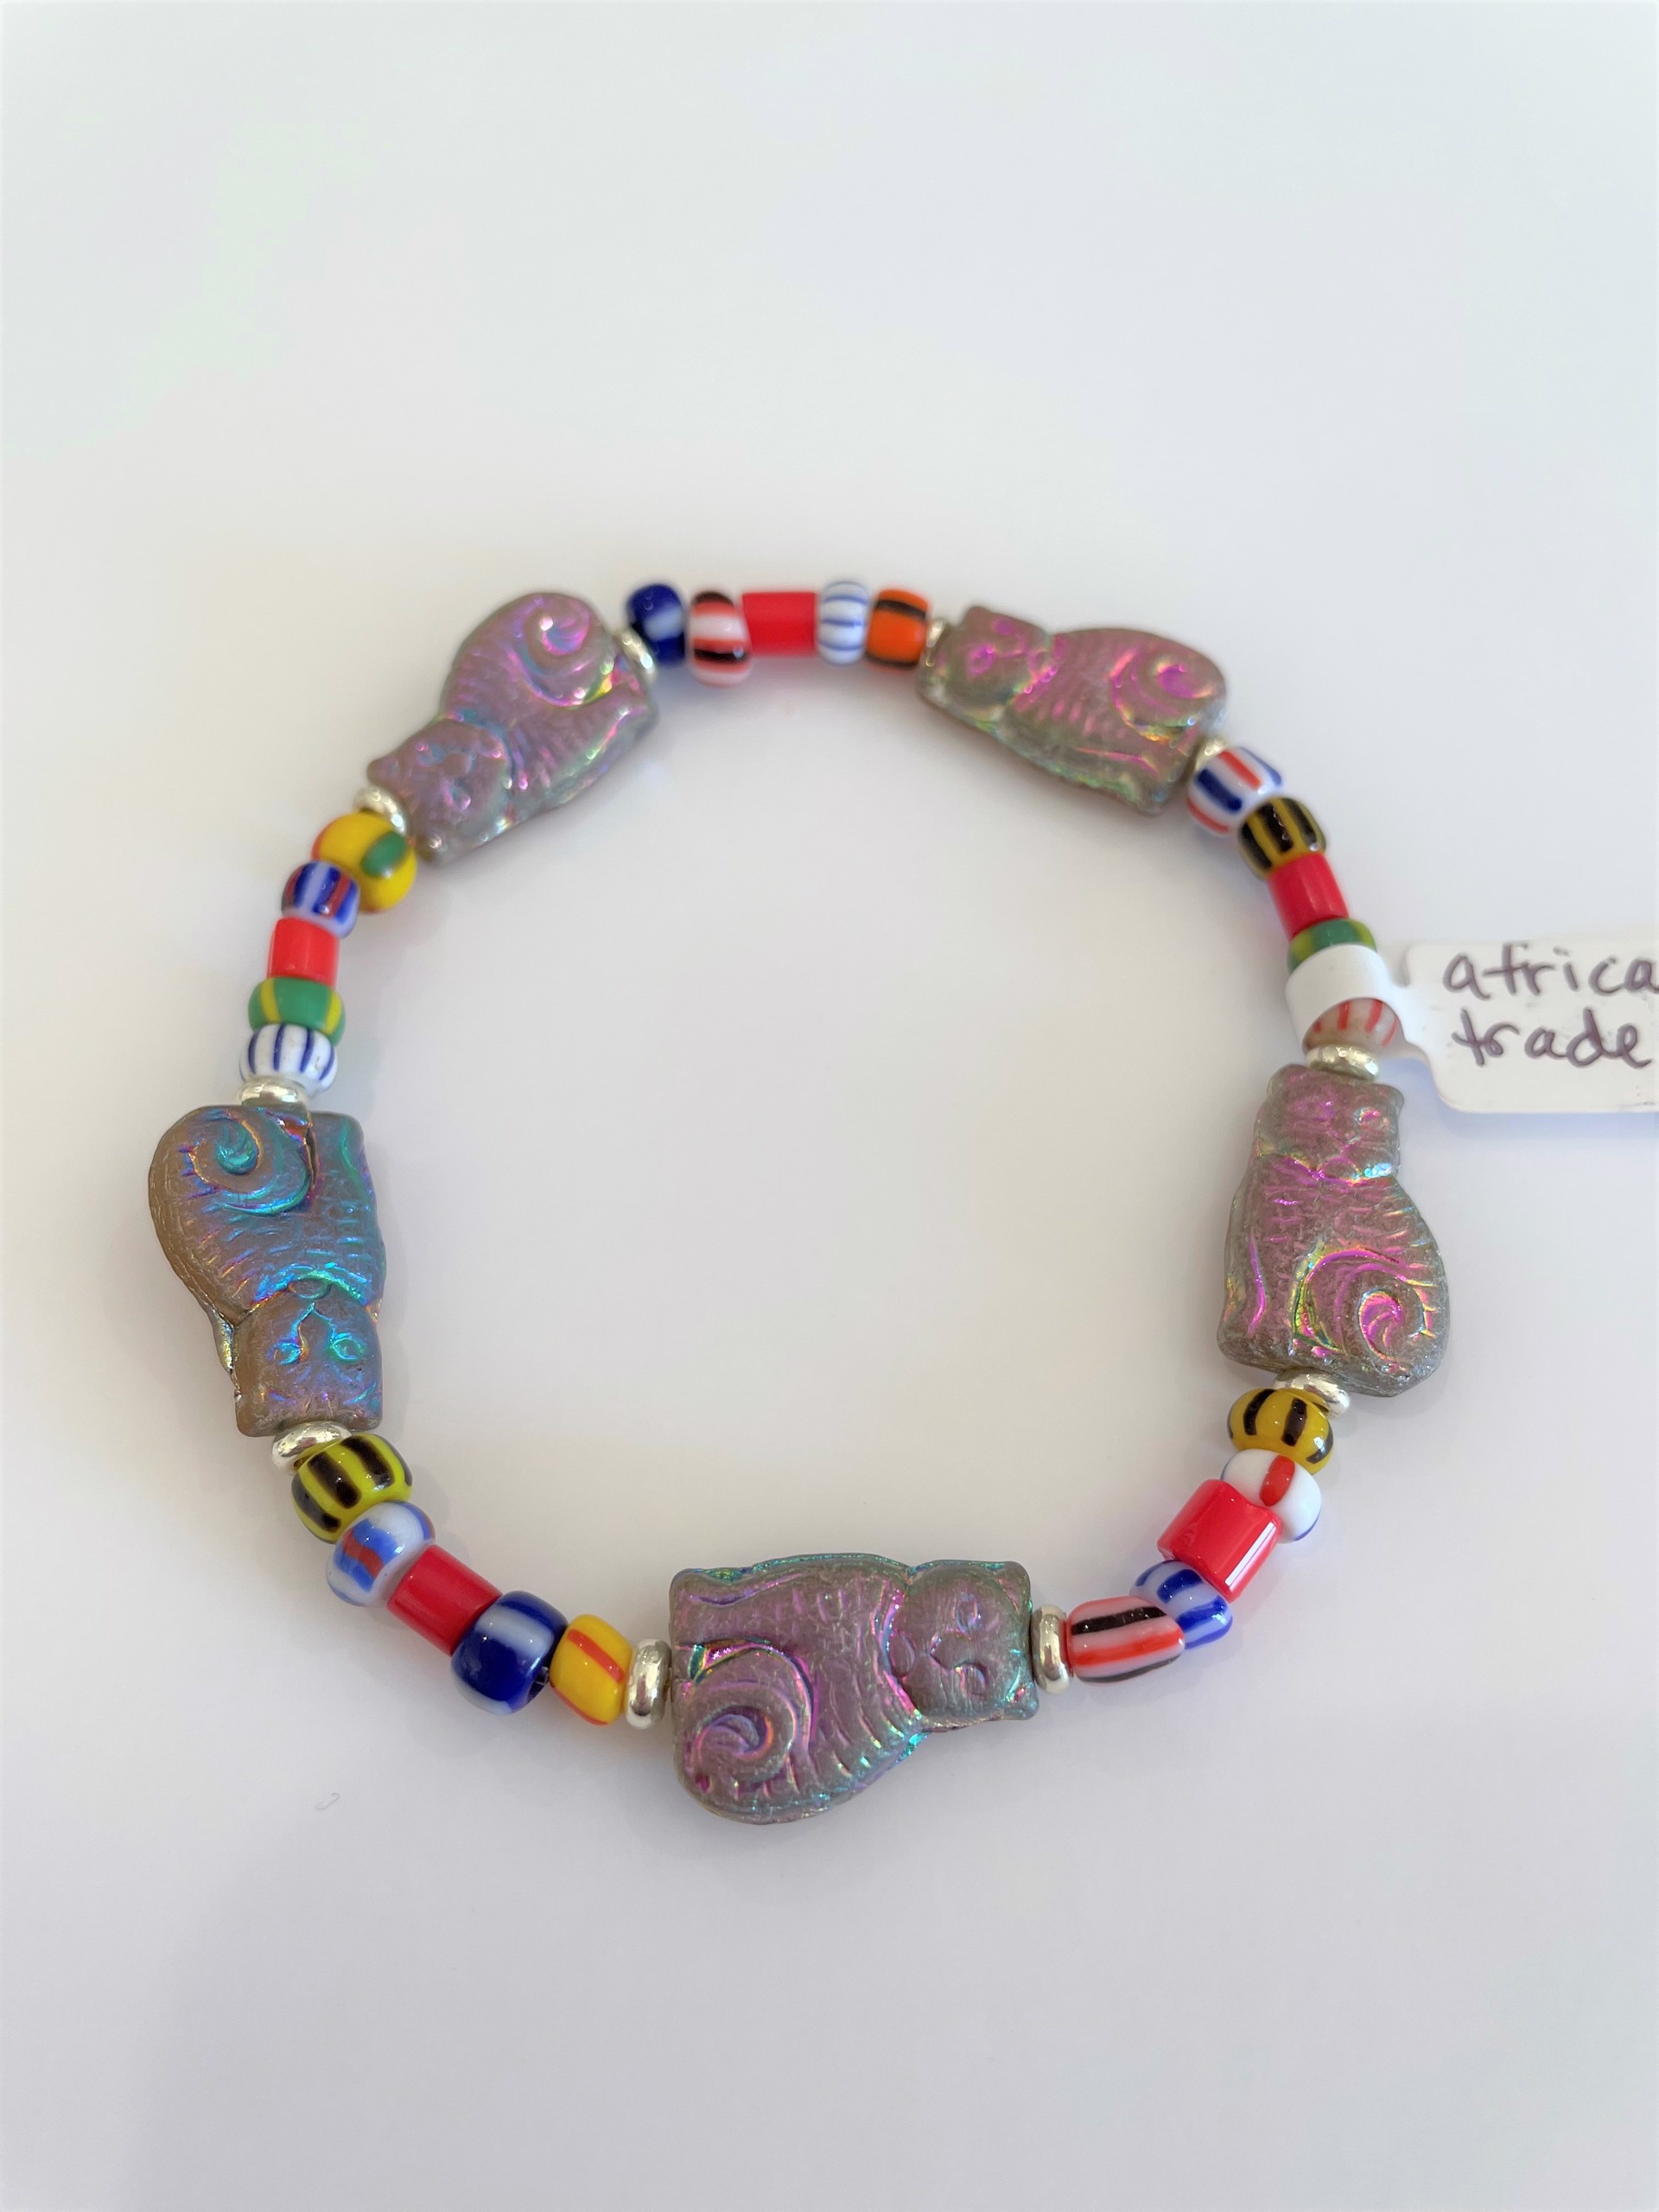 African Trade Beads with Golden Cat Bracelet by Emelie Hebert